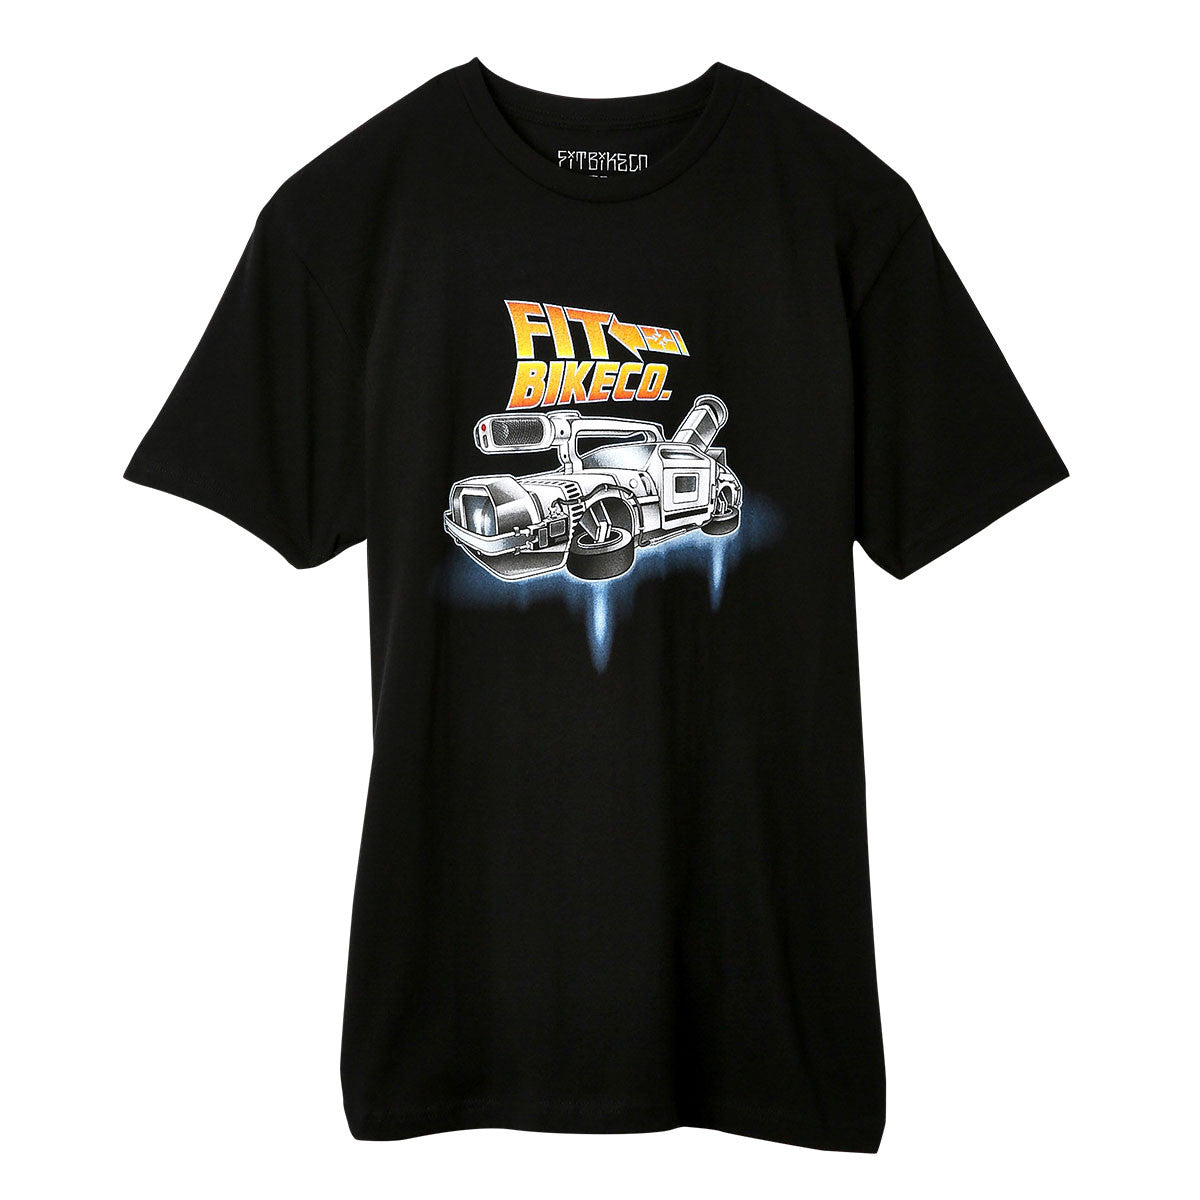 Fit "VX Time Machine" BMX T-shirt - Sz Adult Large - Black